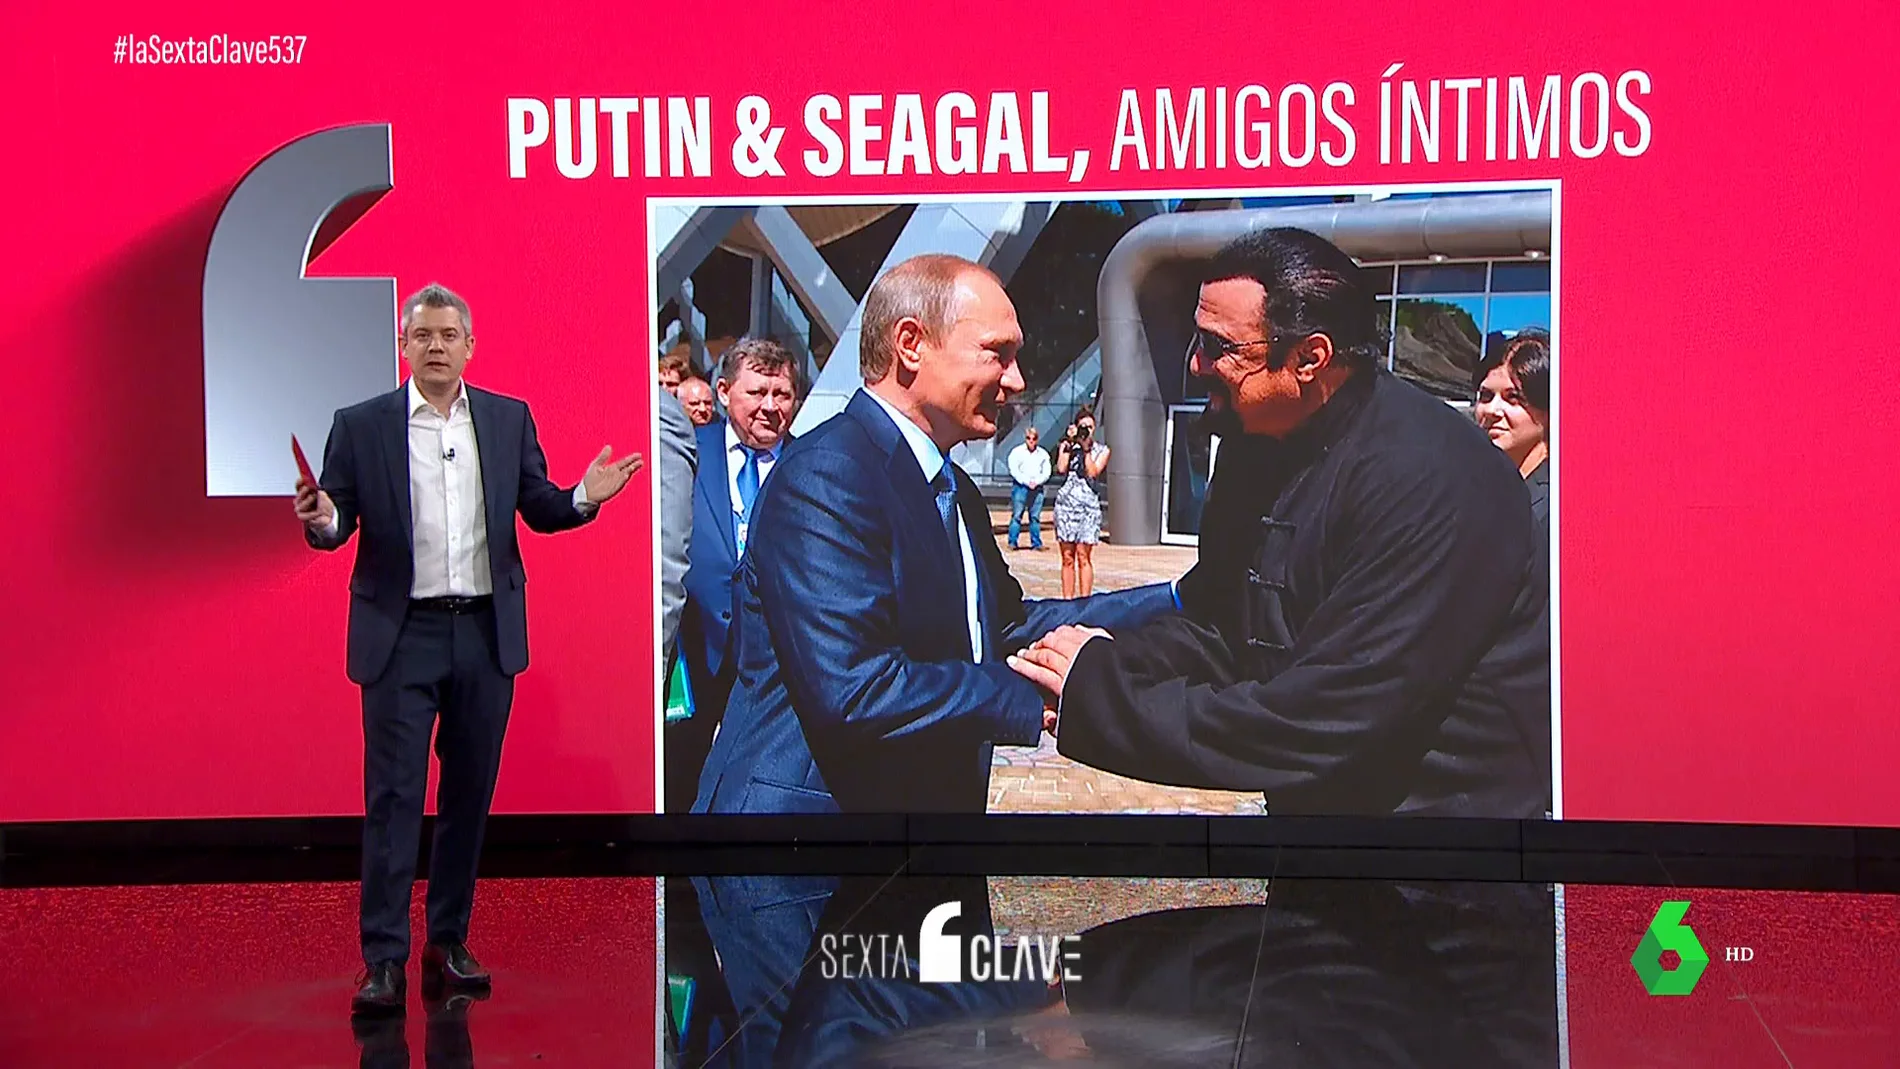 Steven Seagal, íntimo de Putin: la estrecha relación que lo convierte en amigo de Rusia